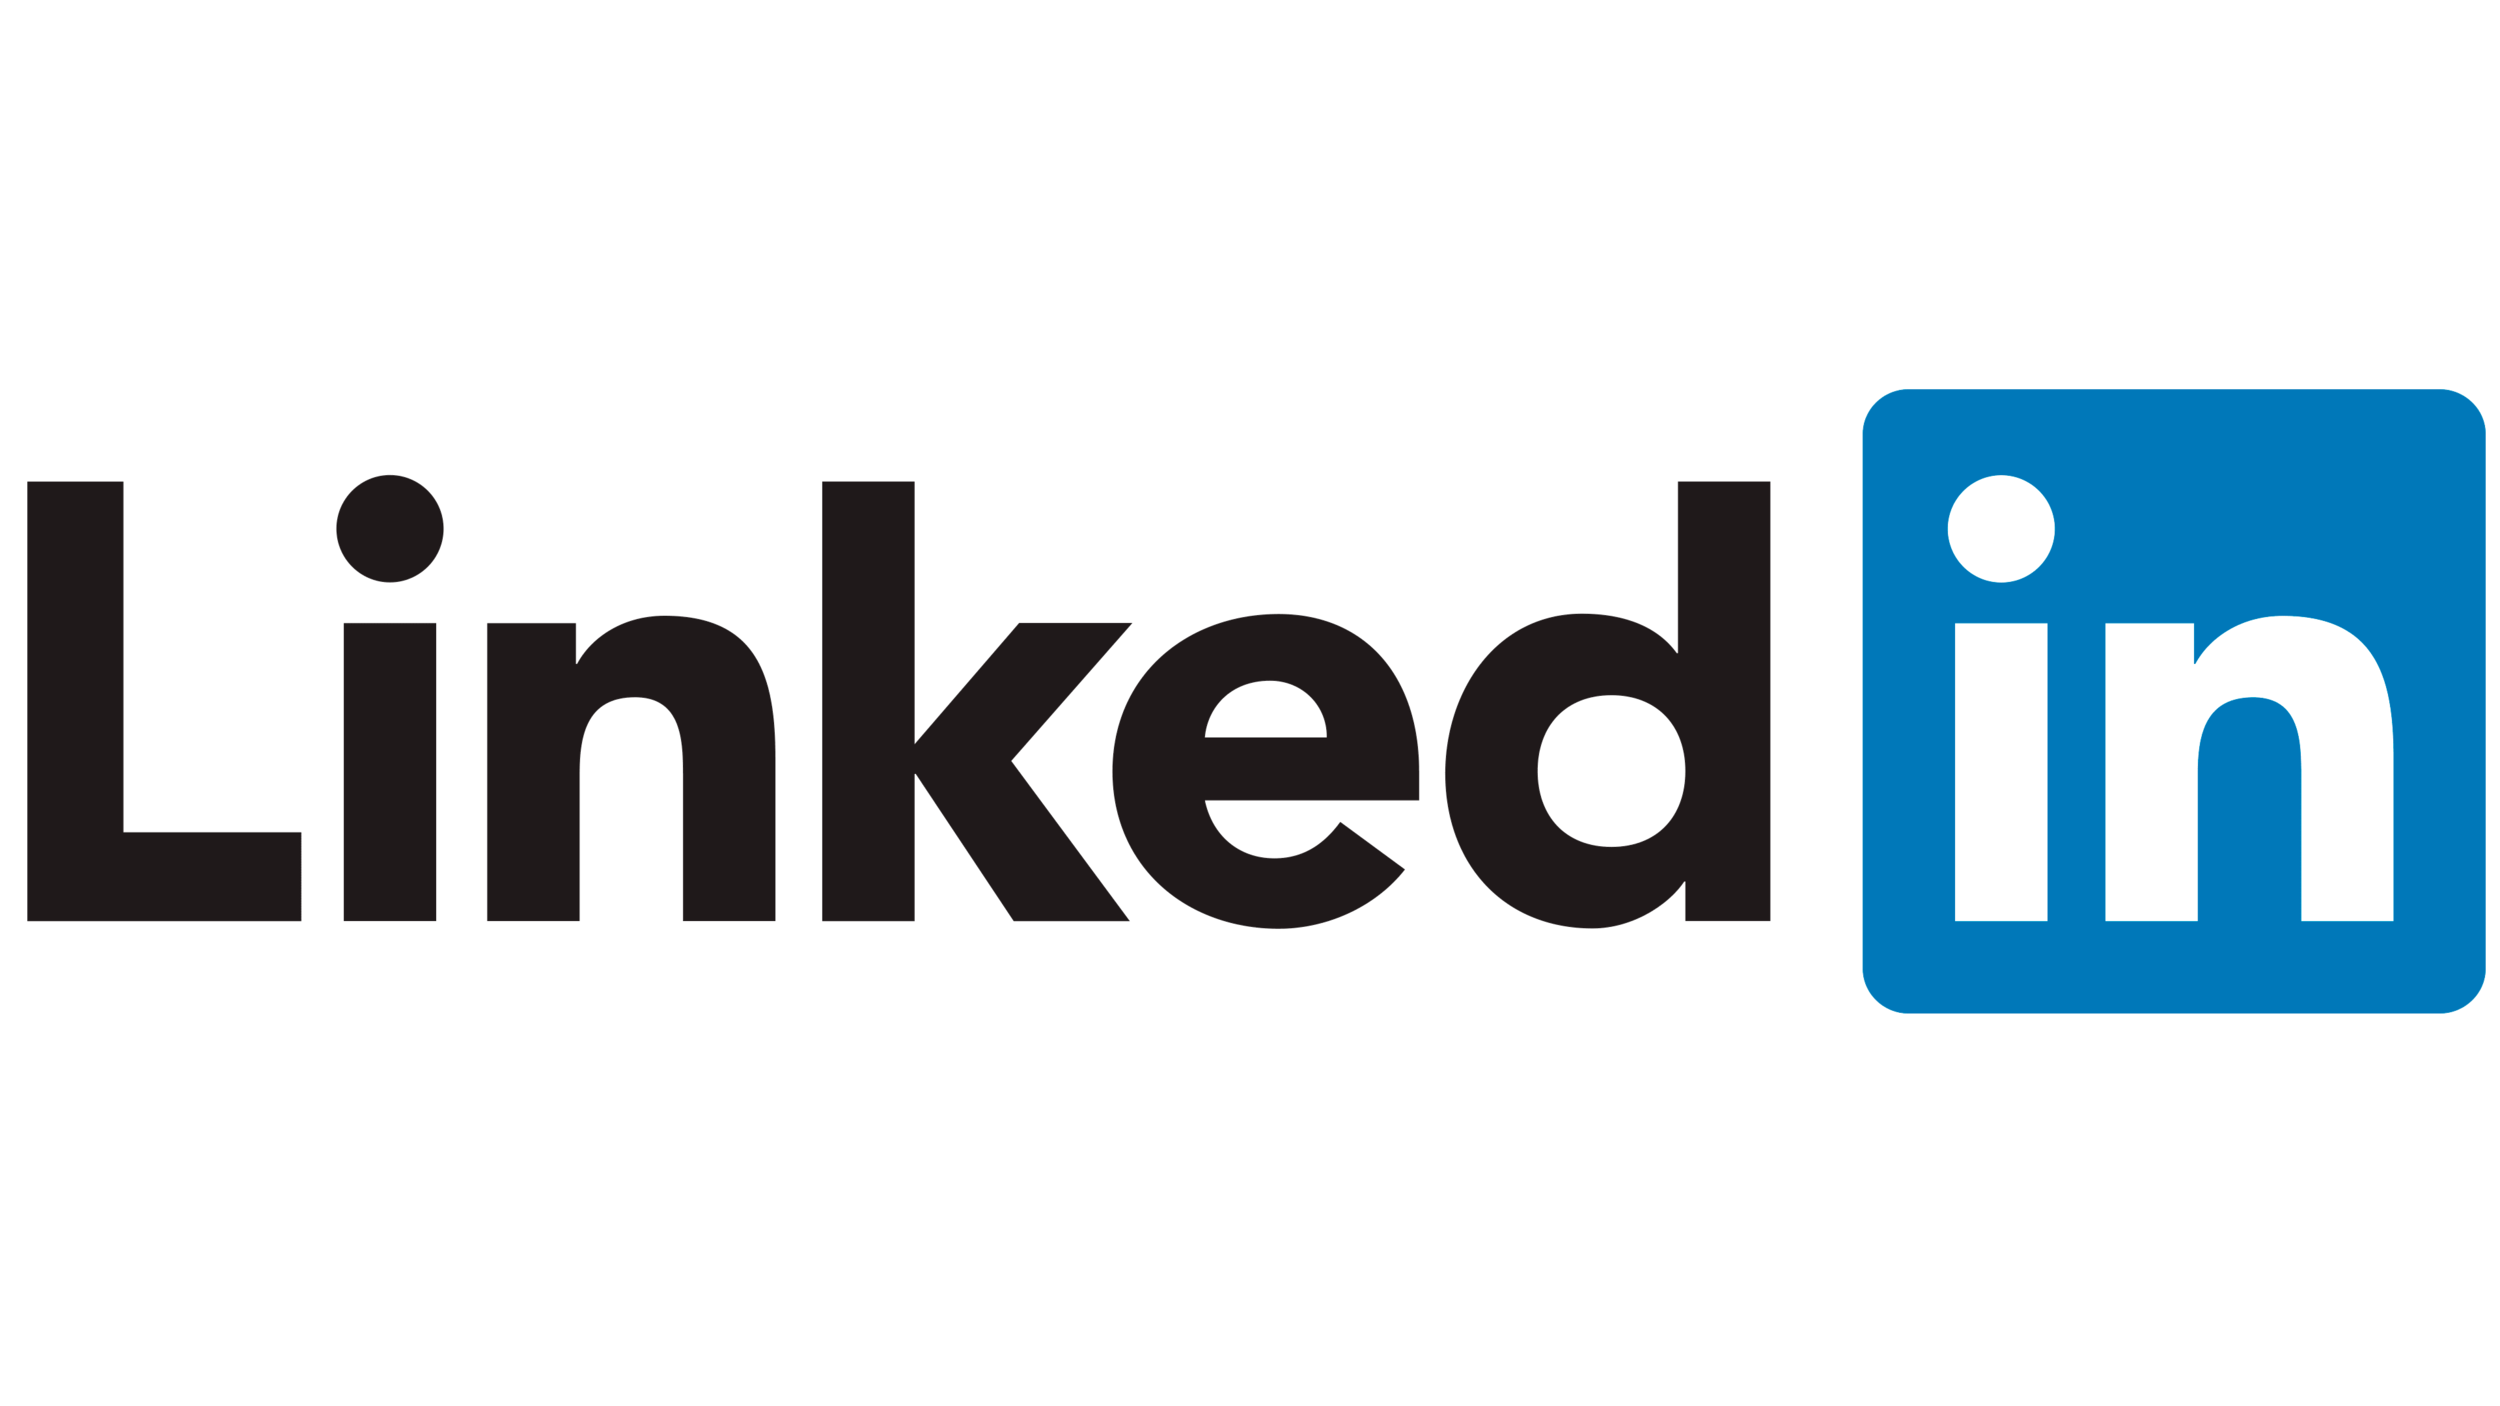 Linkedin-Logo-2011–2019.png